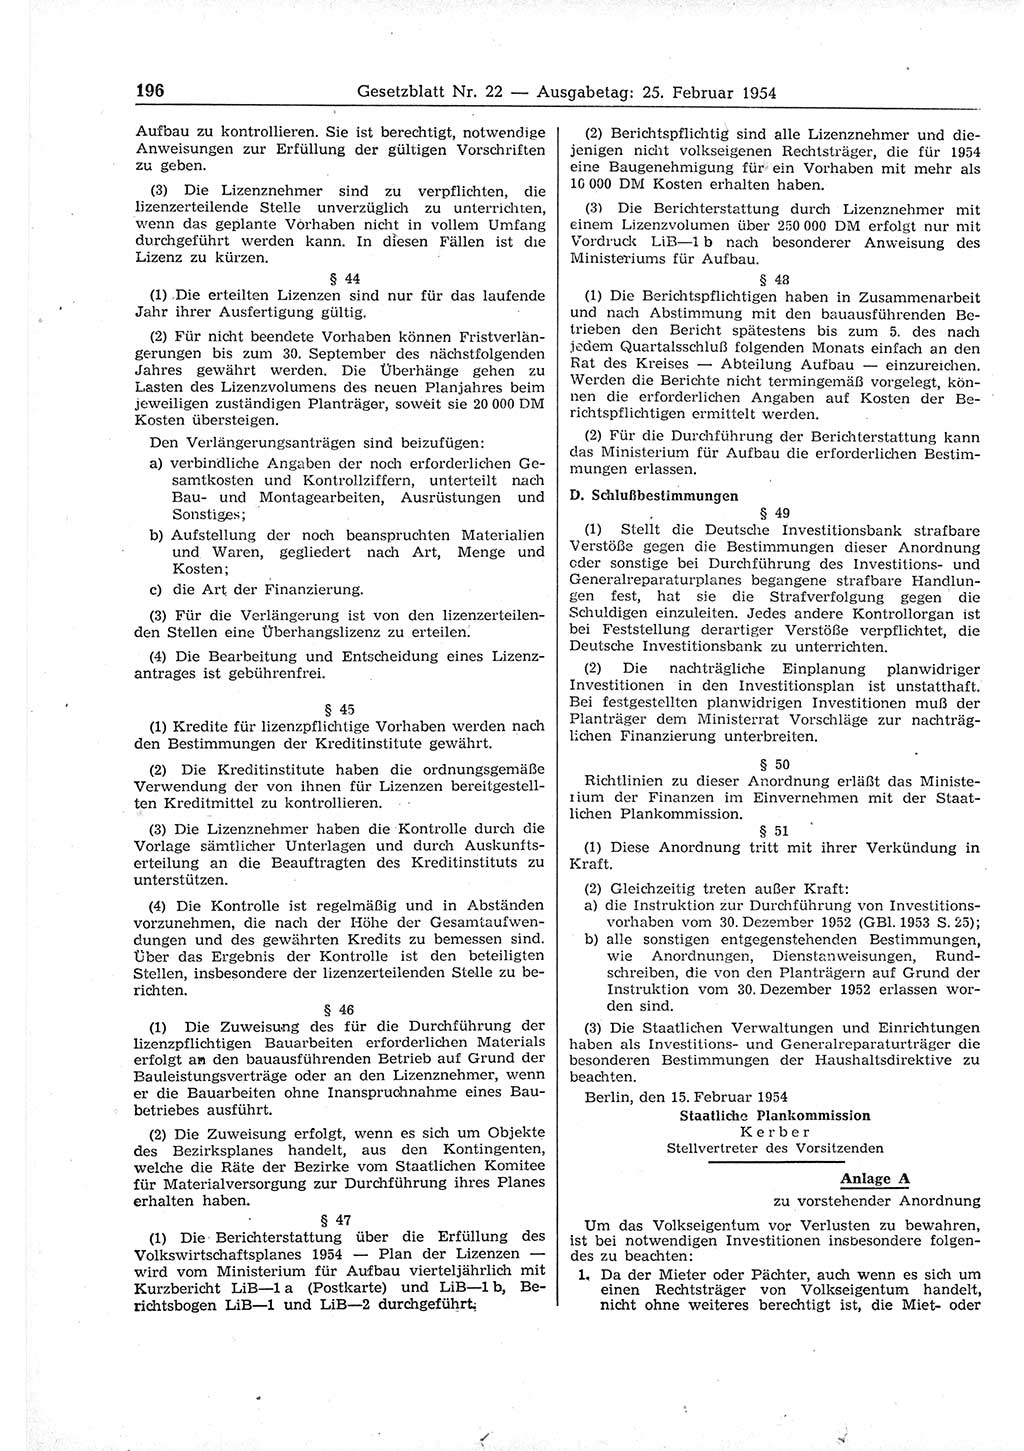 Gesetzblatt (GBl.) der Deutschen Demokratischen Republik (DDR) 1954, Seite 196 (GBl. DDR 1954, S. 196)